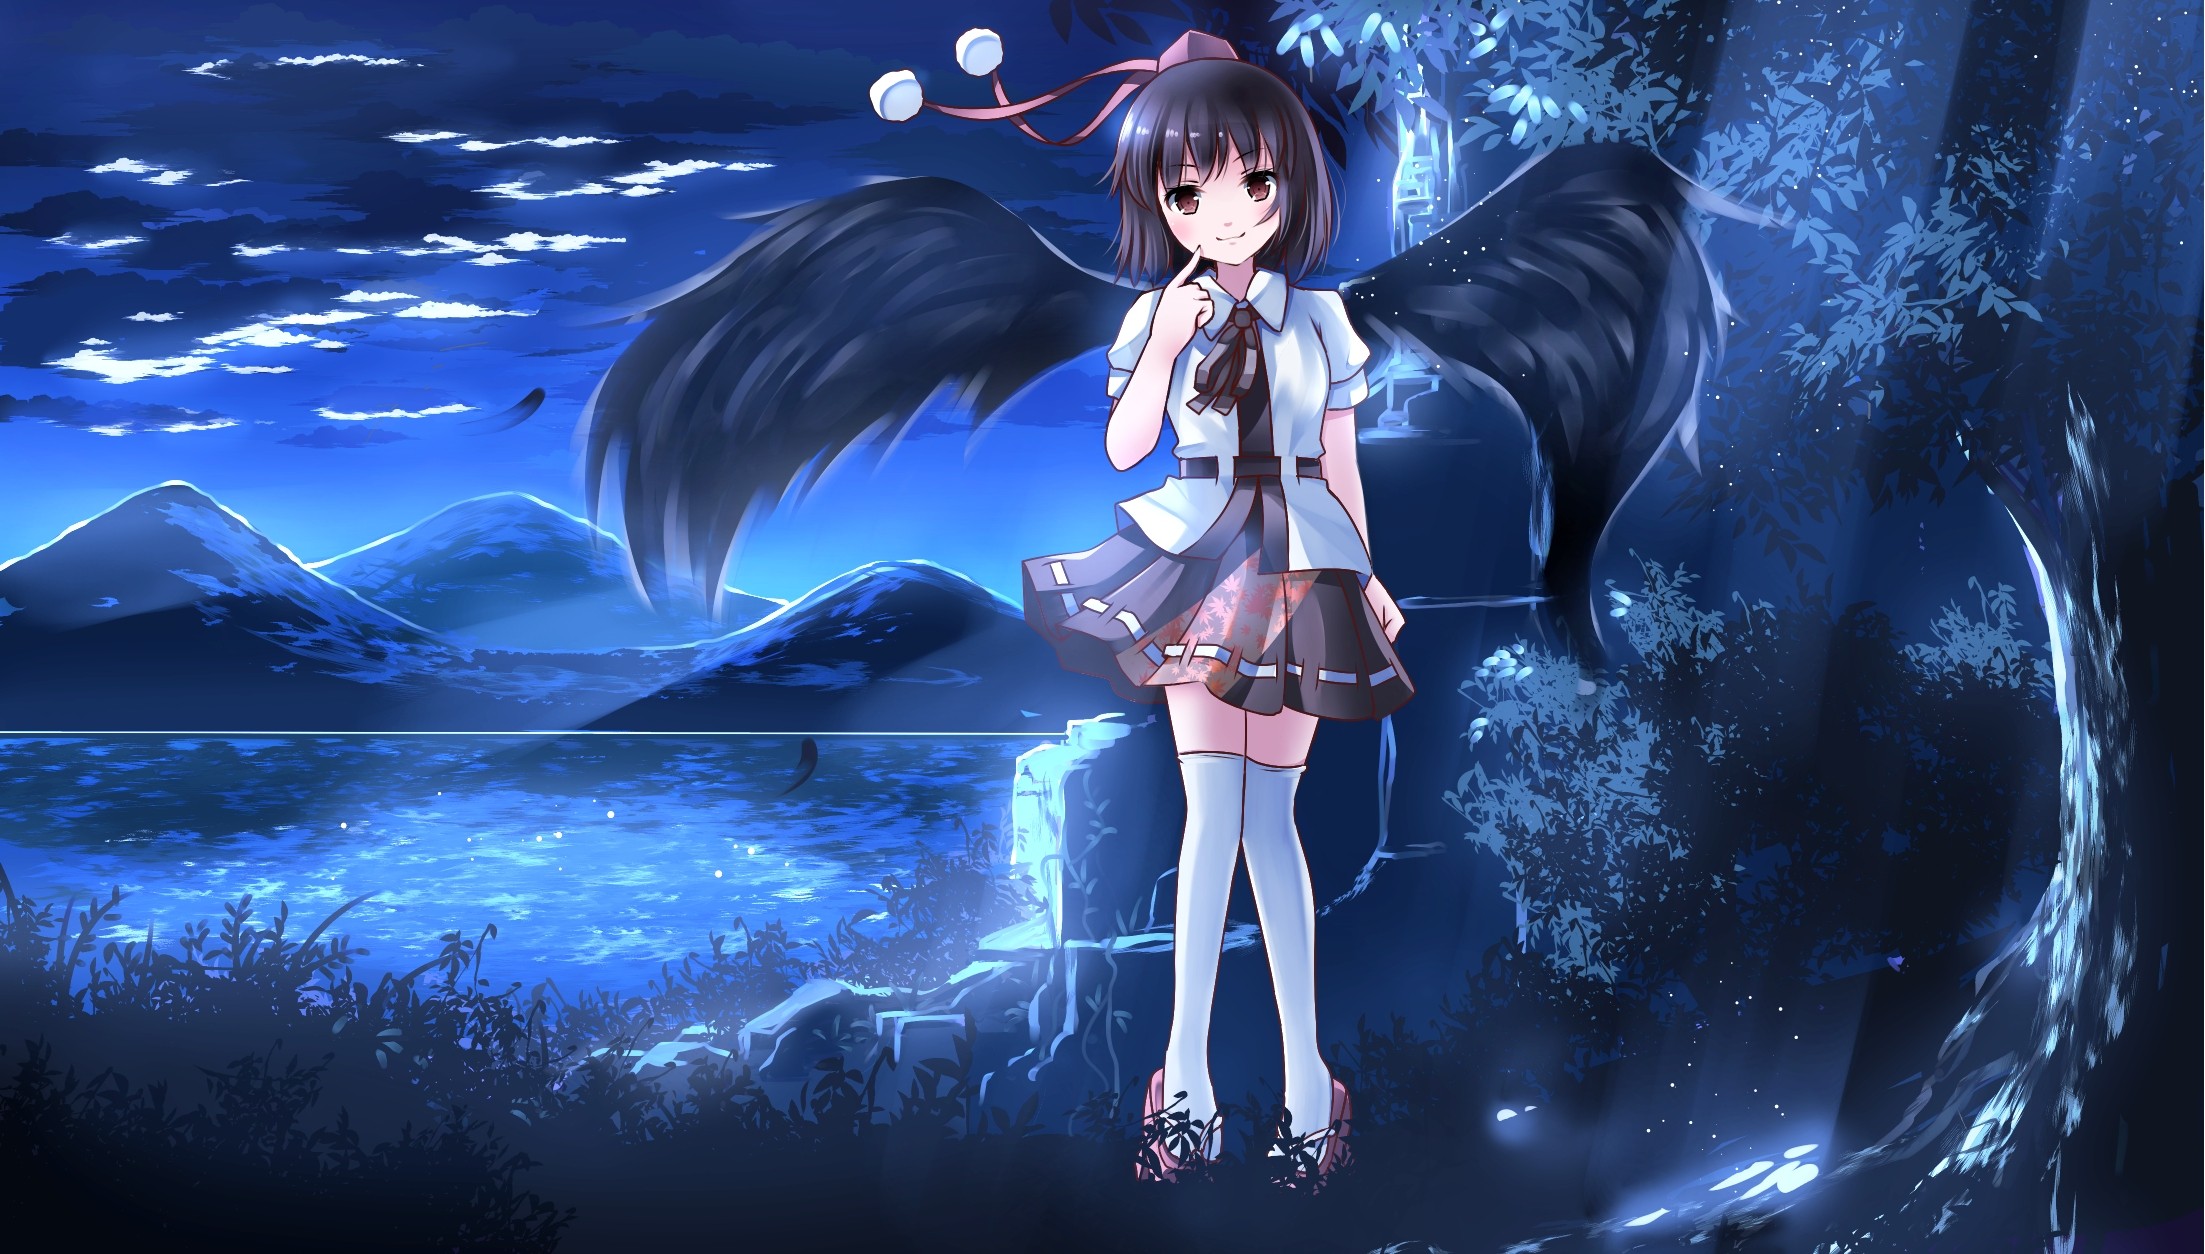 Anime Anime Girls Touhou Shameimaru Aya Short Hair Wings Night Brown Eyes 2205x1254